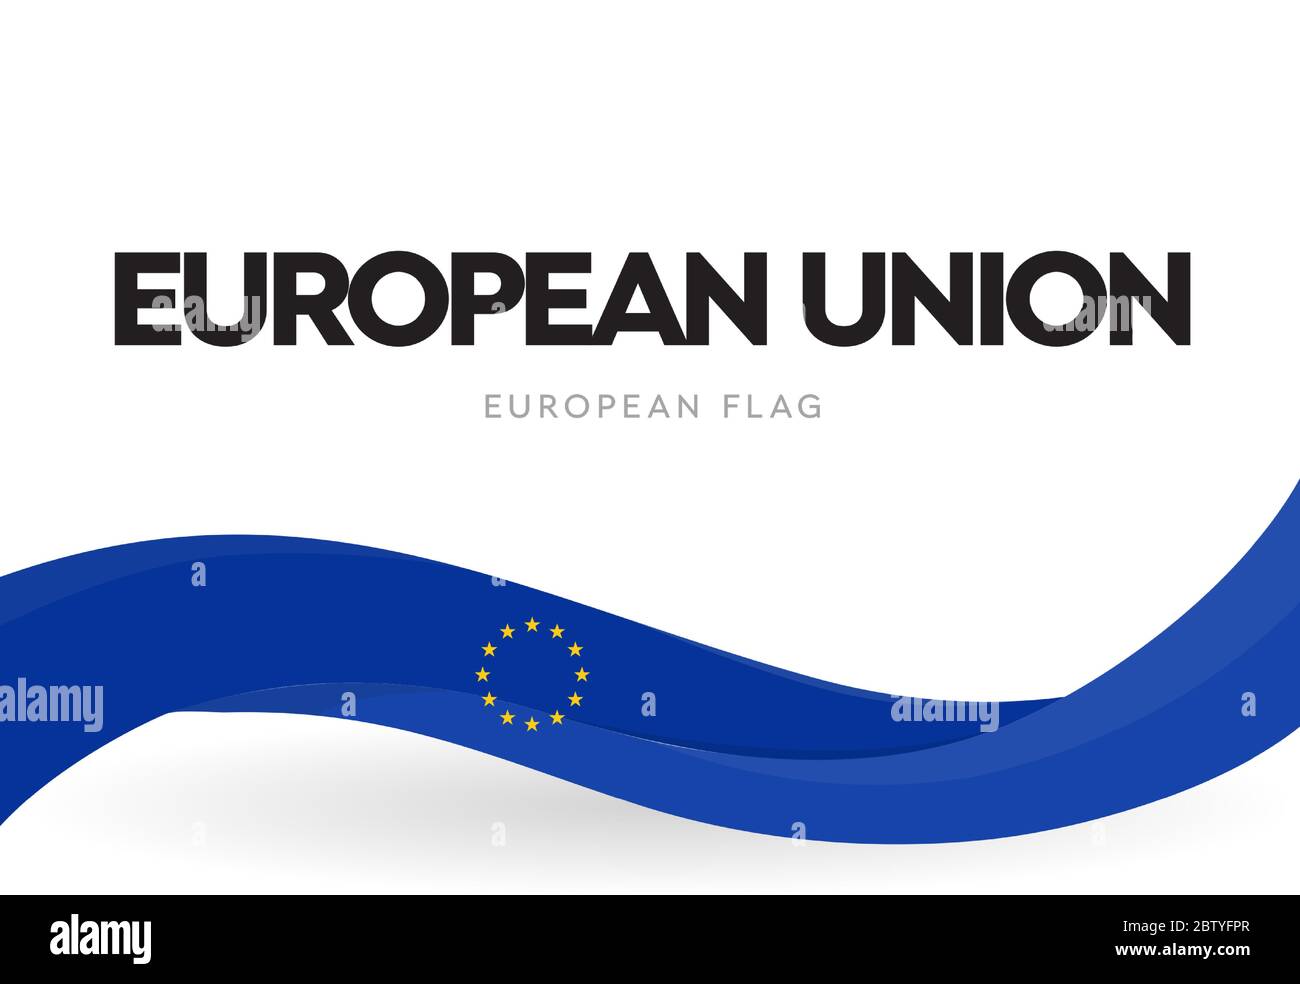 Banner der Europäischen Union mit winkender Flagge. EU-Unterscheidungszeichen. Europa blau patriotische Band mit Sternen Poster. Broschüre der Europäischen Wirtschaftsgemeinschaft Stock Vektor